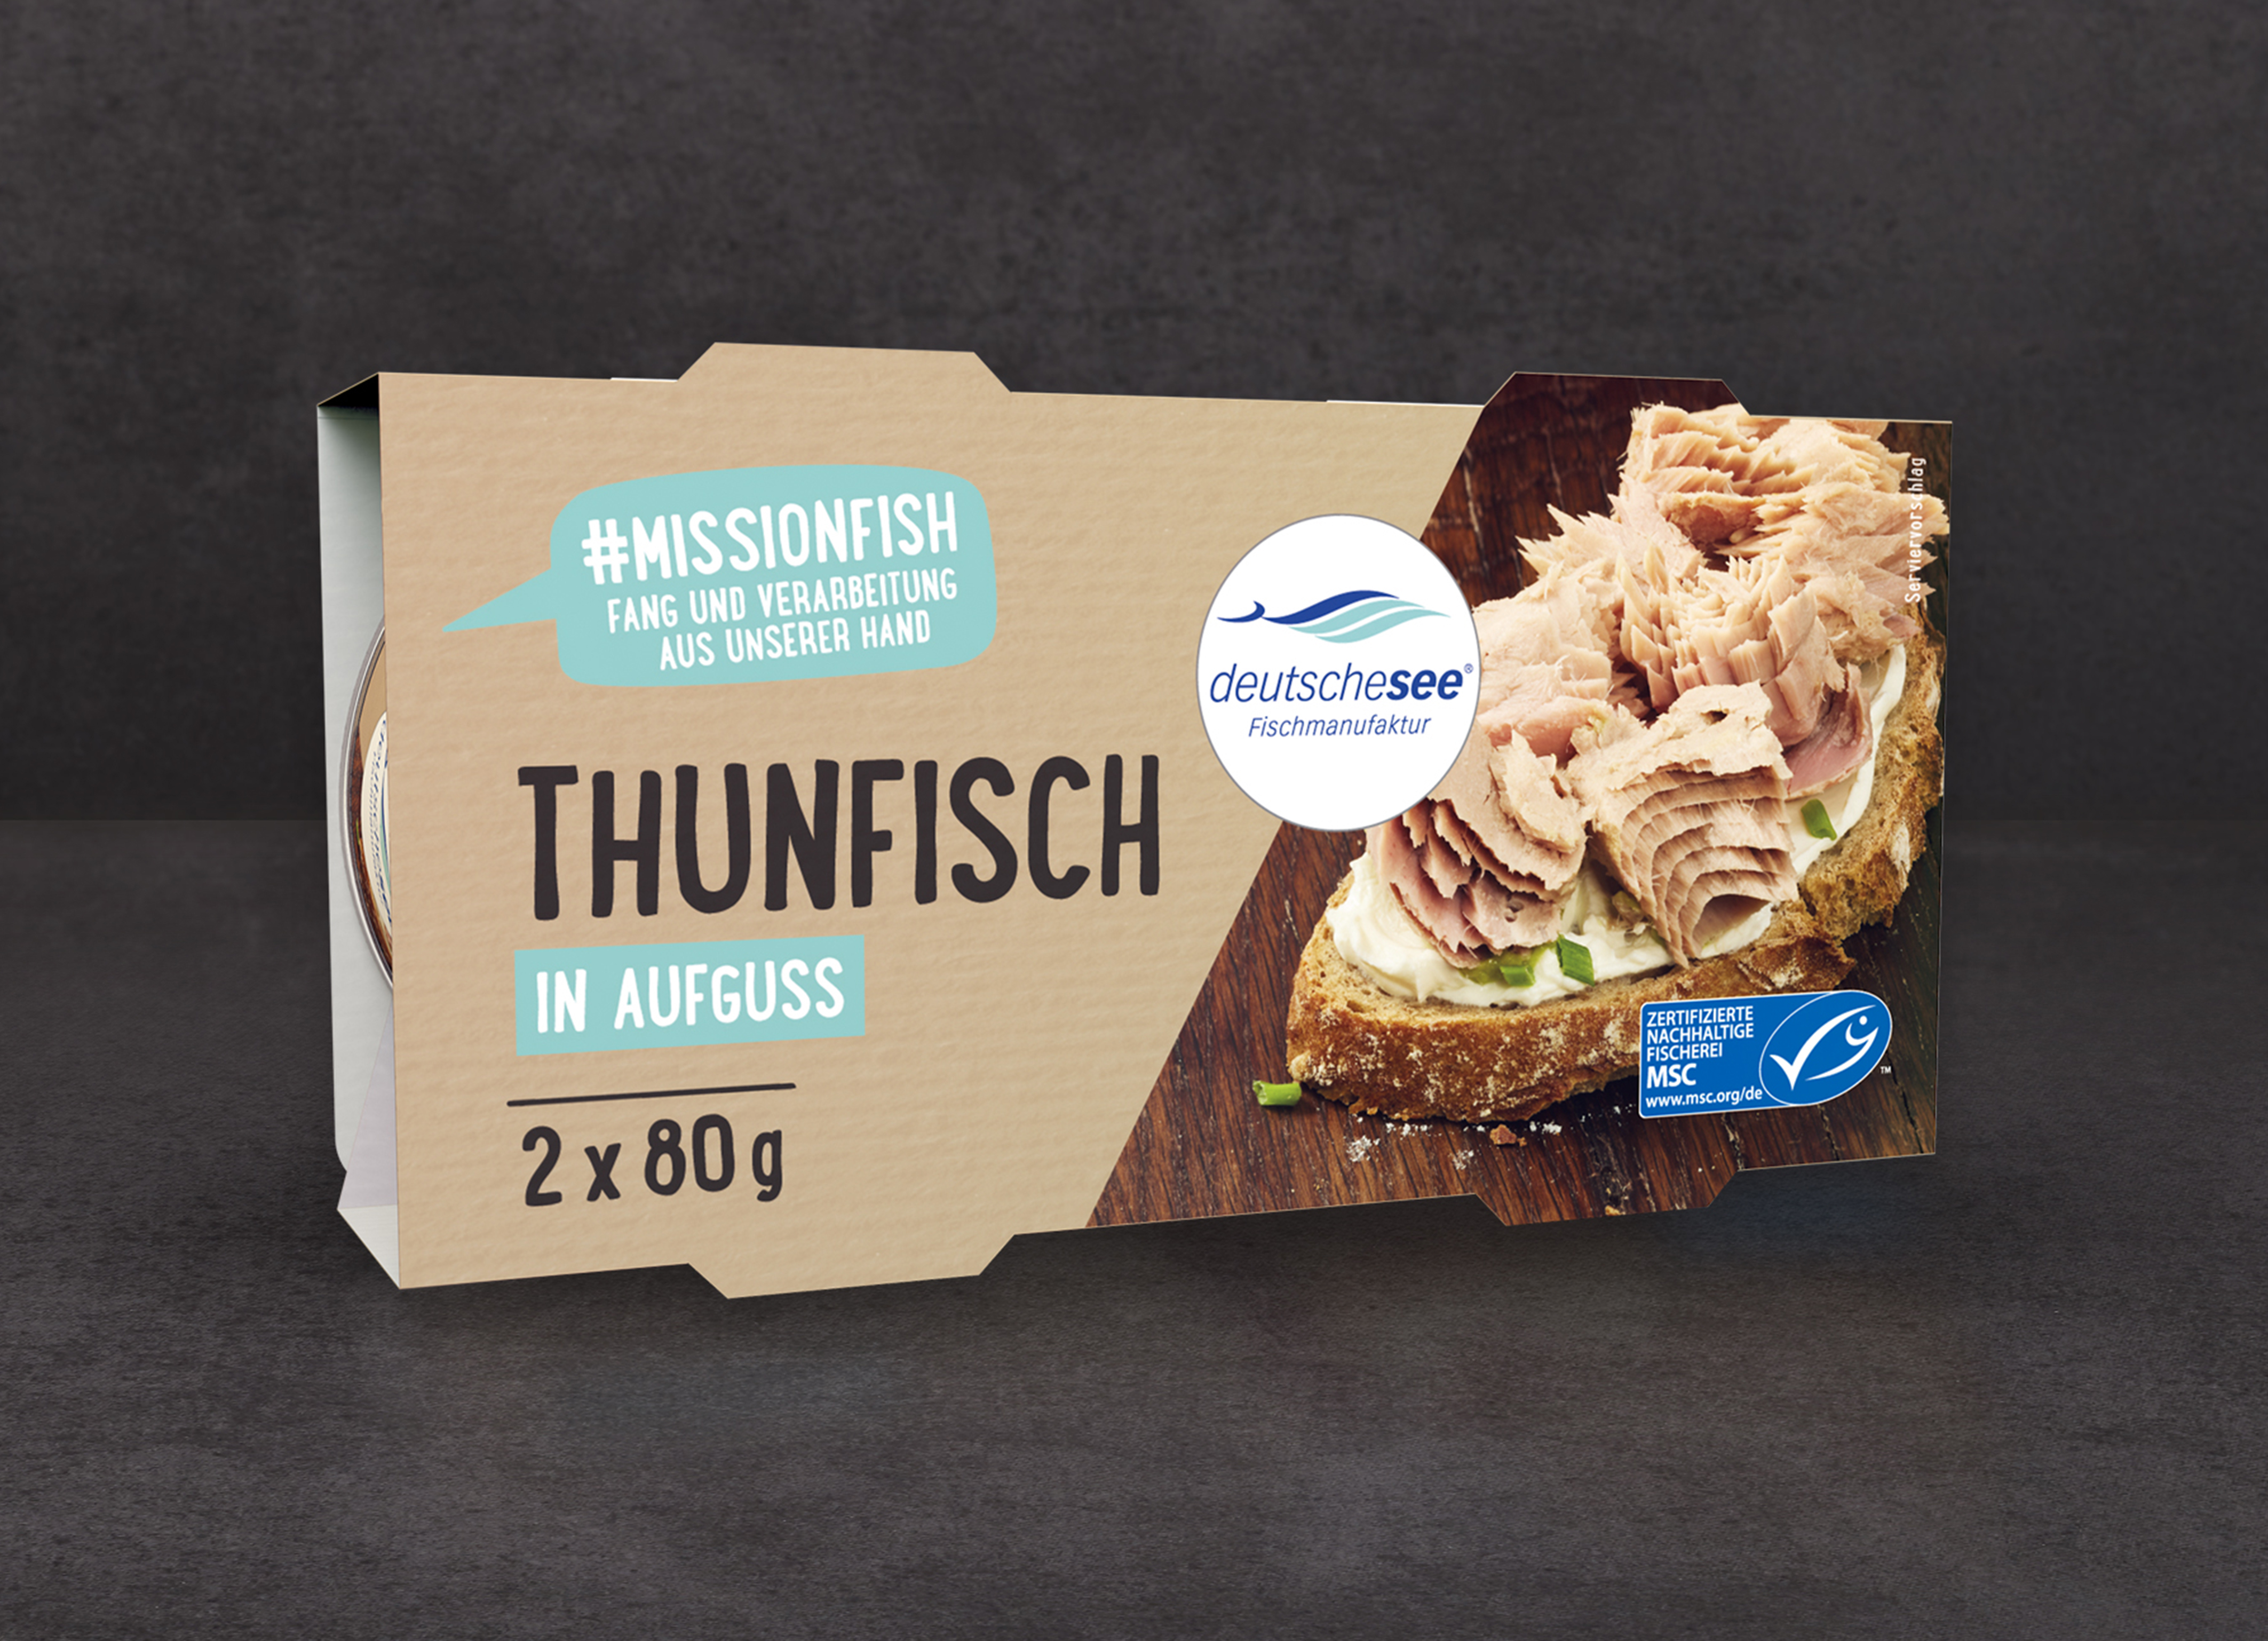 Deutsche See »Thunfisch in Aufguss« · 2x 80g